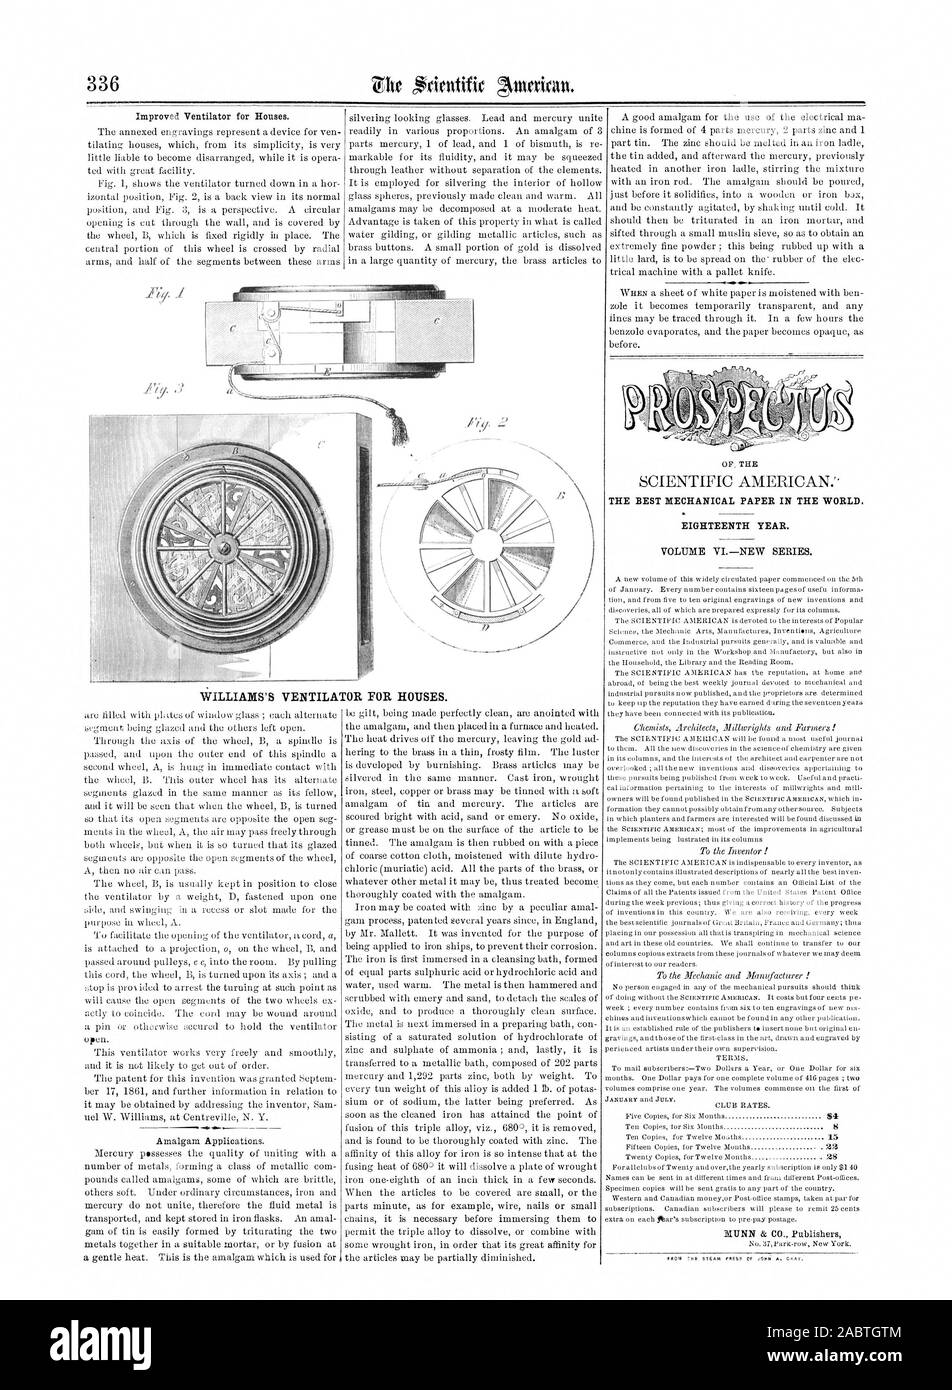 Das beste mechanische PAPIER IN DER WELT. Achtzehnten JAHR. Band der Serie VINEW., Scientific American, 1862-05-24 Stockfoto